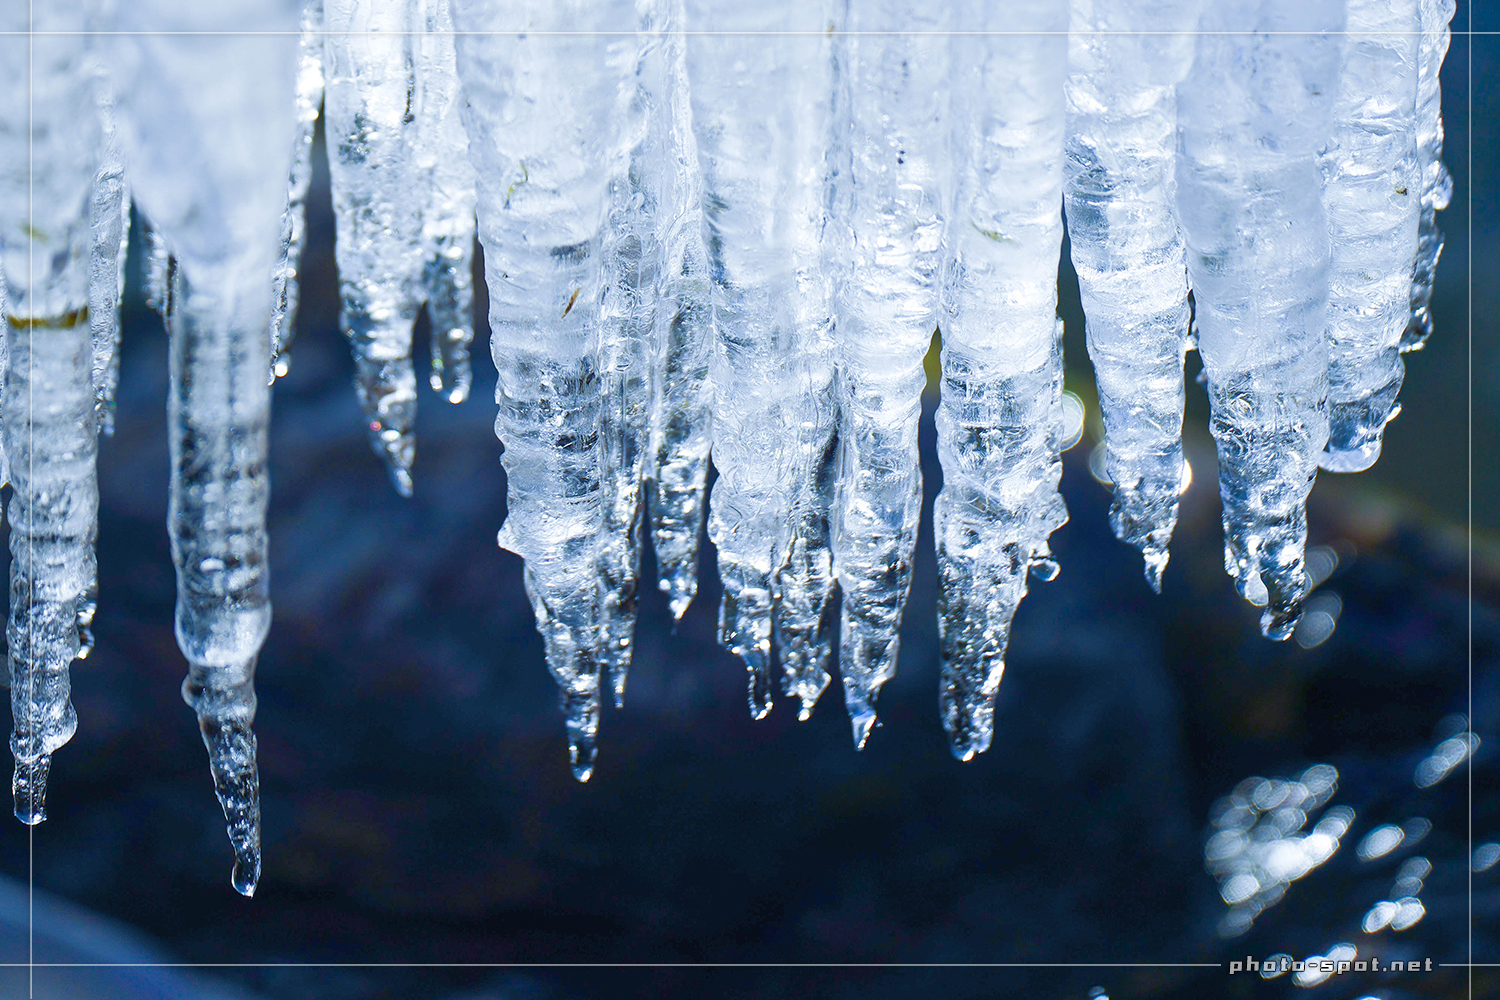 透明度が高い「しぶき氷」は天然のガラス細工